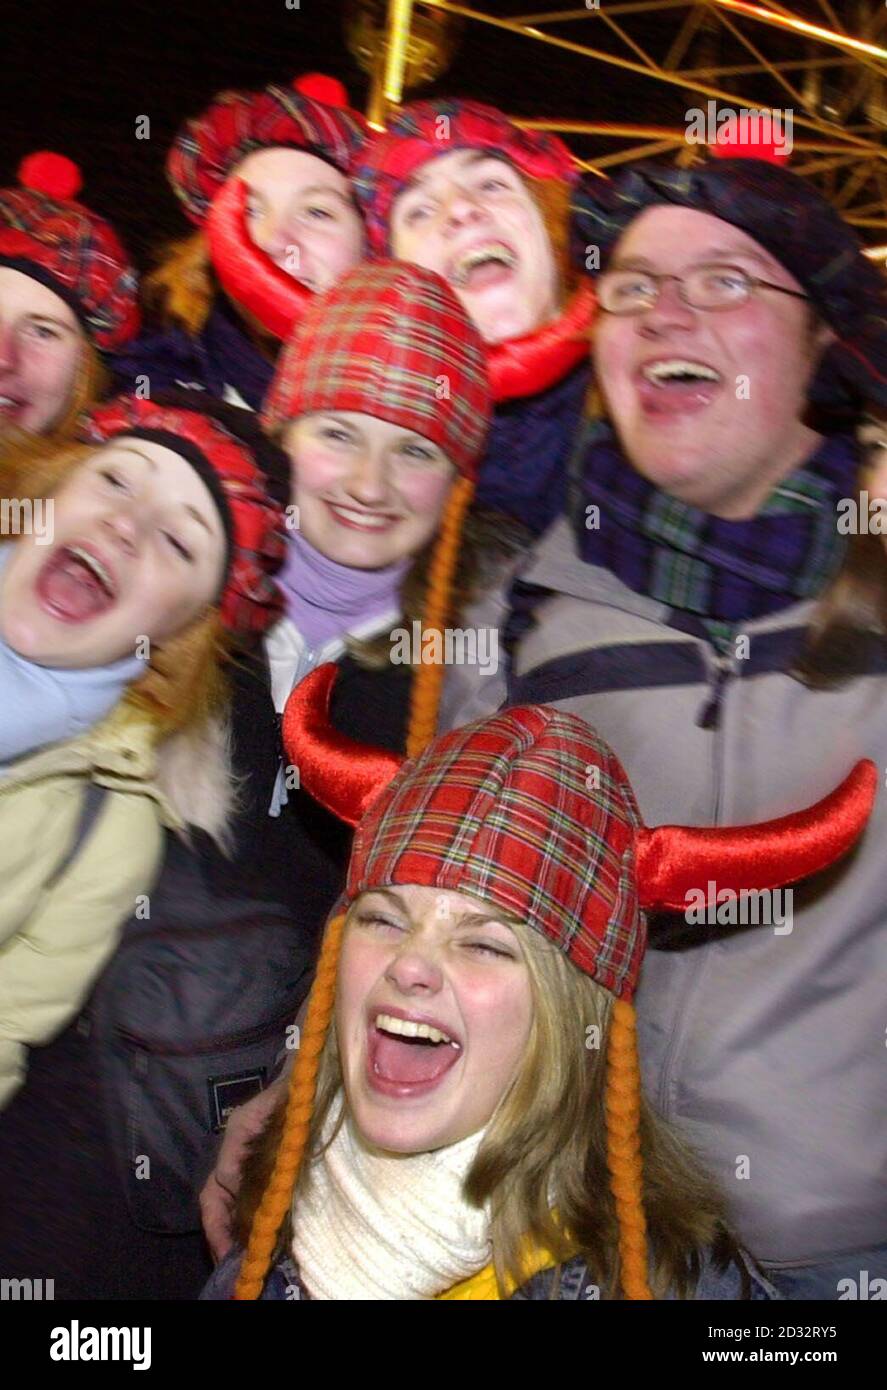 Edinburgh's Hogmanay celebrations start early at a fair ground near Edinburgh castle. Stock Photo